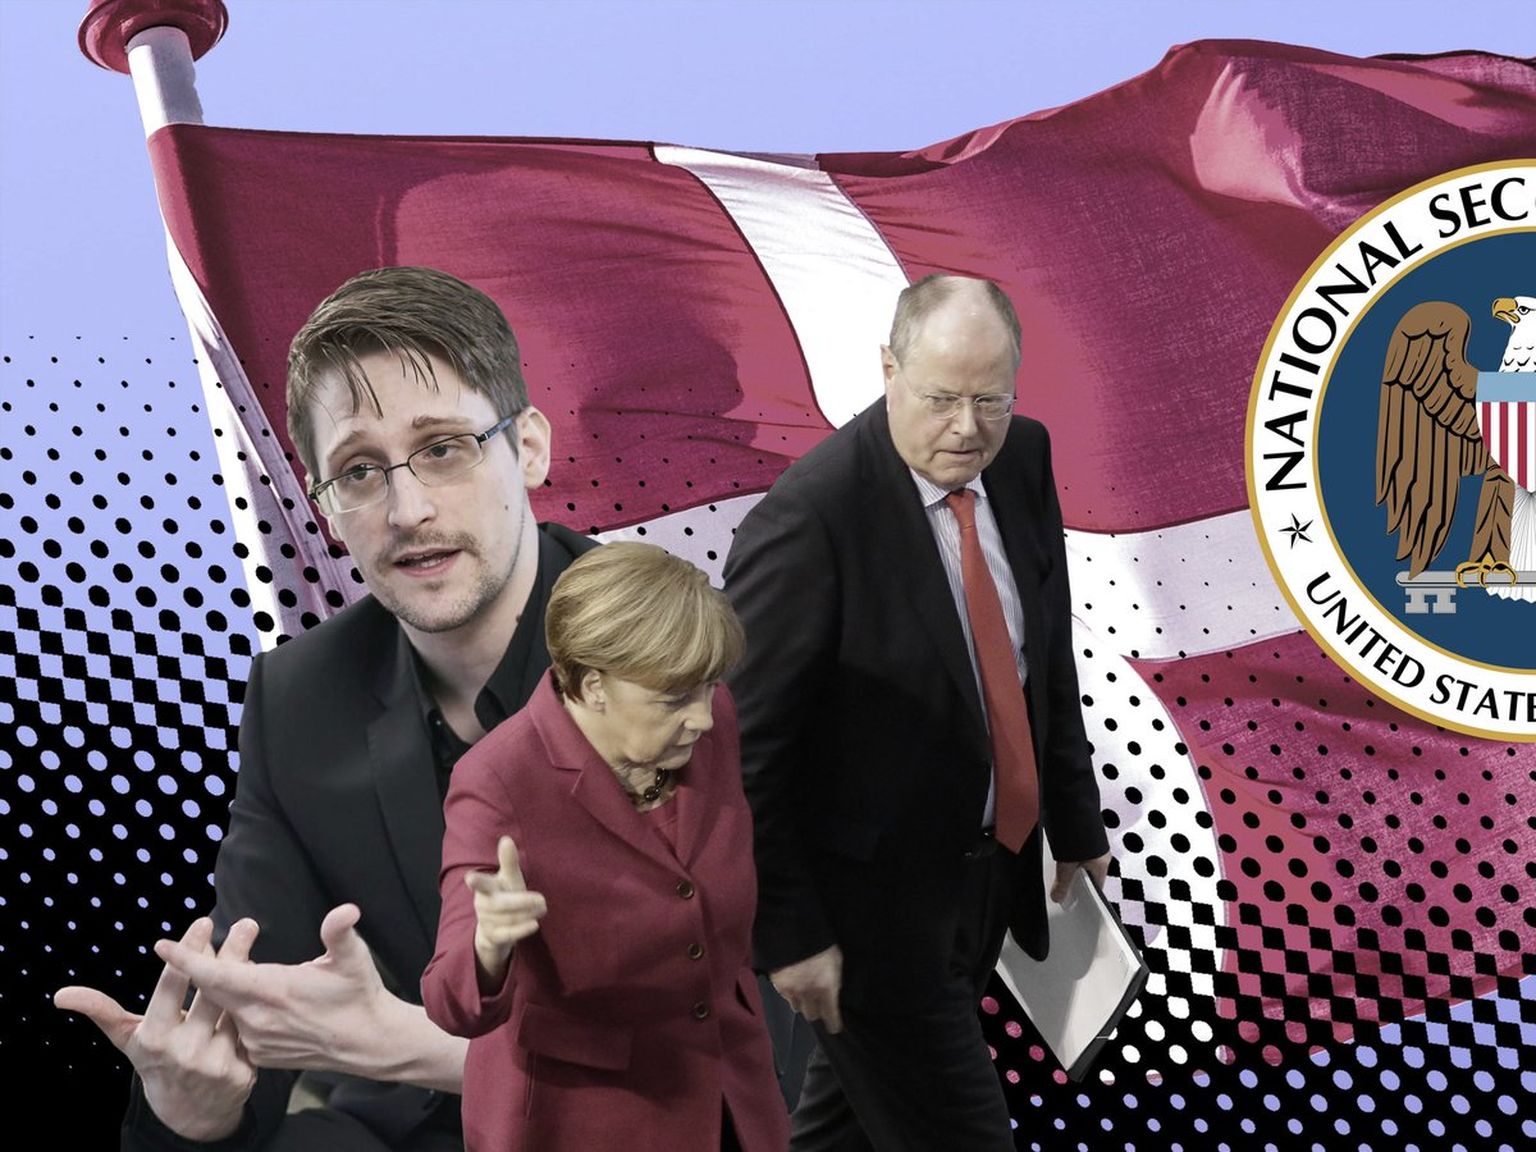 USALDA, AGA KONTROLLI: Edward Snowden (vasakul) avalikustas juba 2013. aastal, et NSA kuulab pealt Euroopa poliitikute telefone. Pildil on ka ameeriklaste sihtmärgid Angela Merkel ja Peer Steinbrück. Nüüdseks on selgunud, et ameeriklastele osutas selles suurt abi Taani kaitseväe luure.